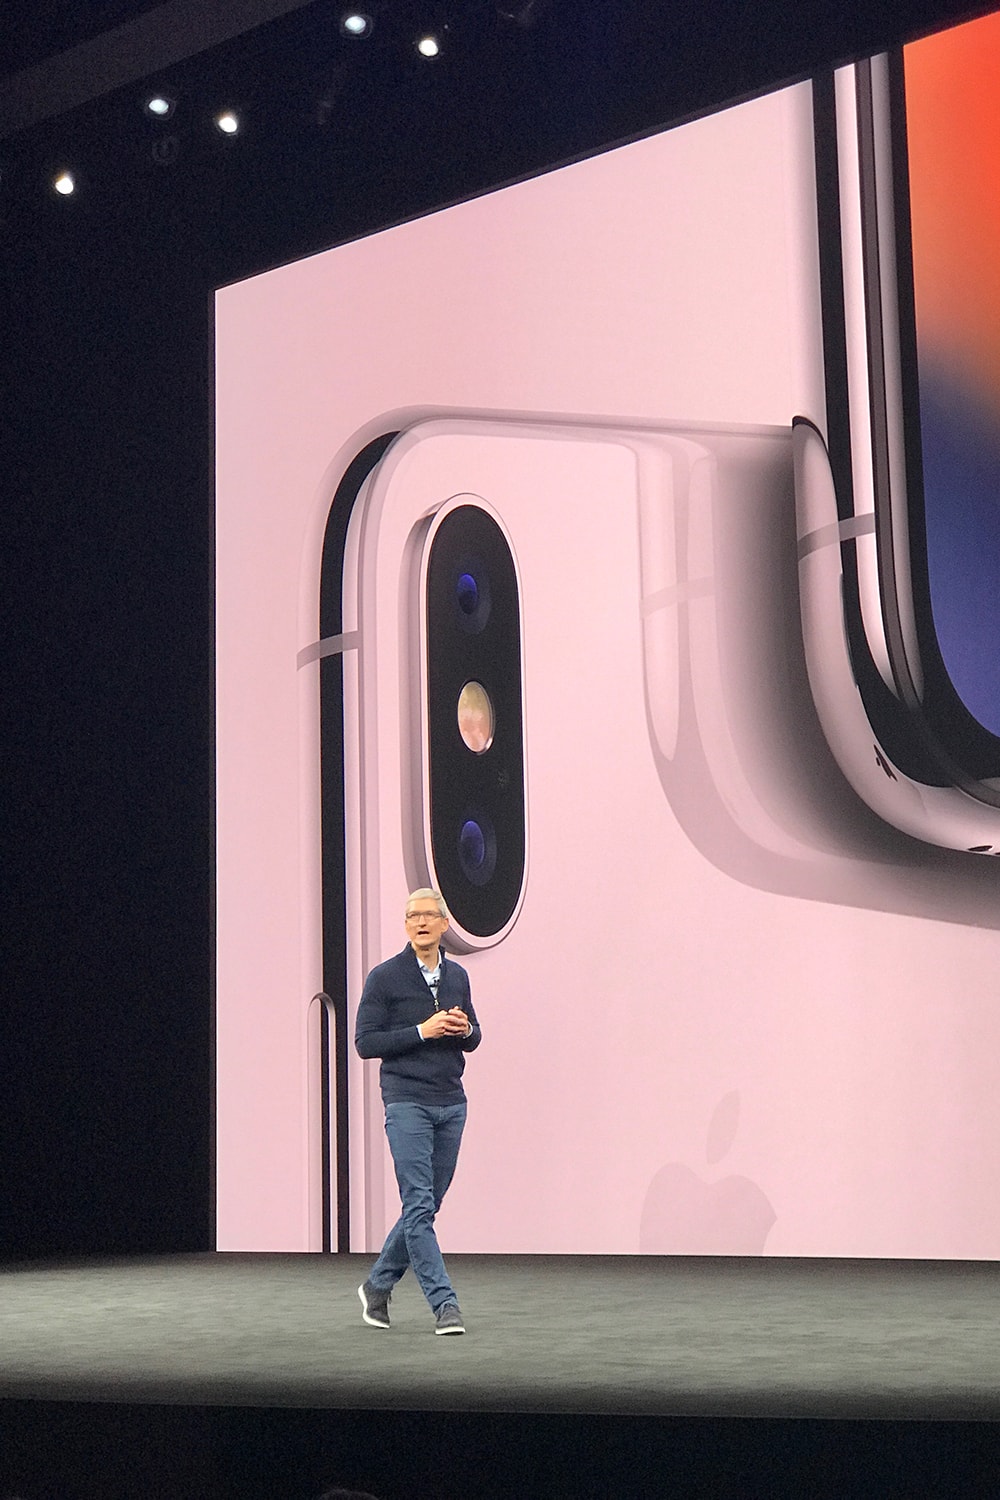 애플 아이폰 아이폰 8 아이폰 8 플러스 에어파워 공개 apple iphone x iphone 8 iphone 8 plus air power reveal 2017